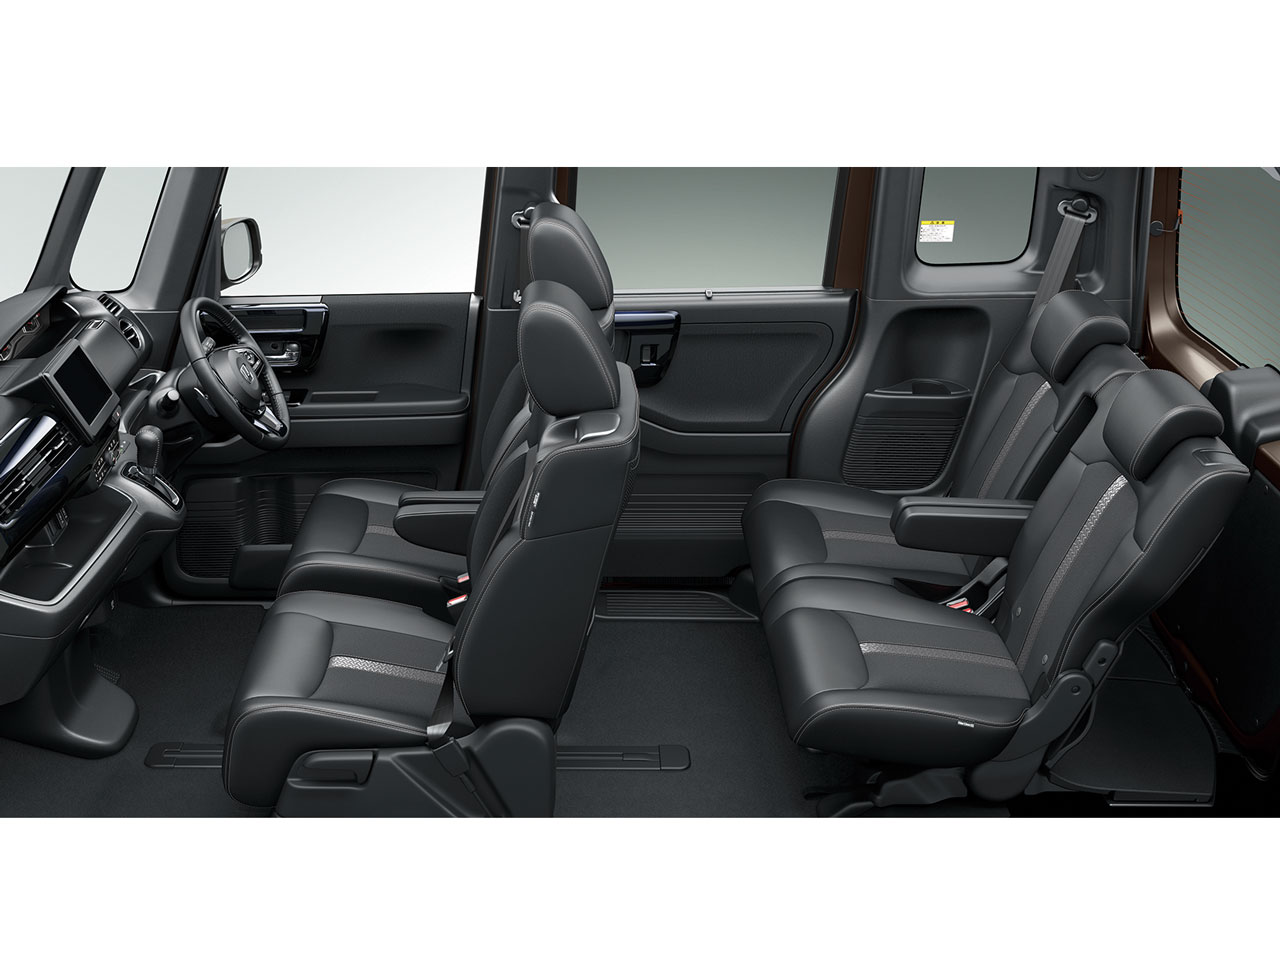 ホンダ N Box カスタム 17年モデル L ターボ コーディネートスタイル 4wdの価格 性能 装備 オプション 年12月25日発売 価格 Com